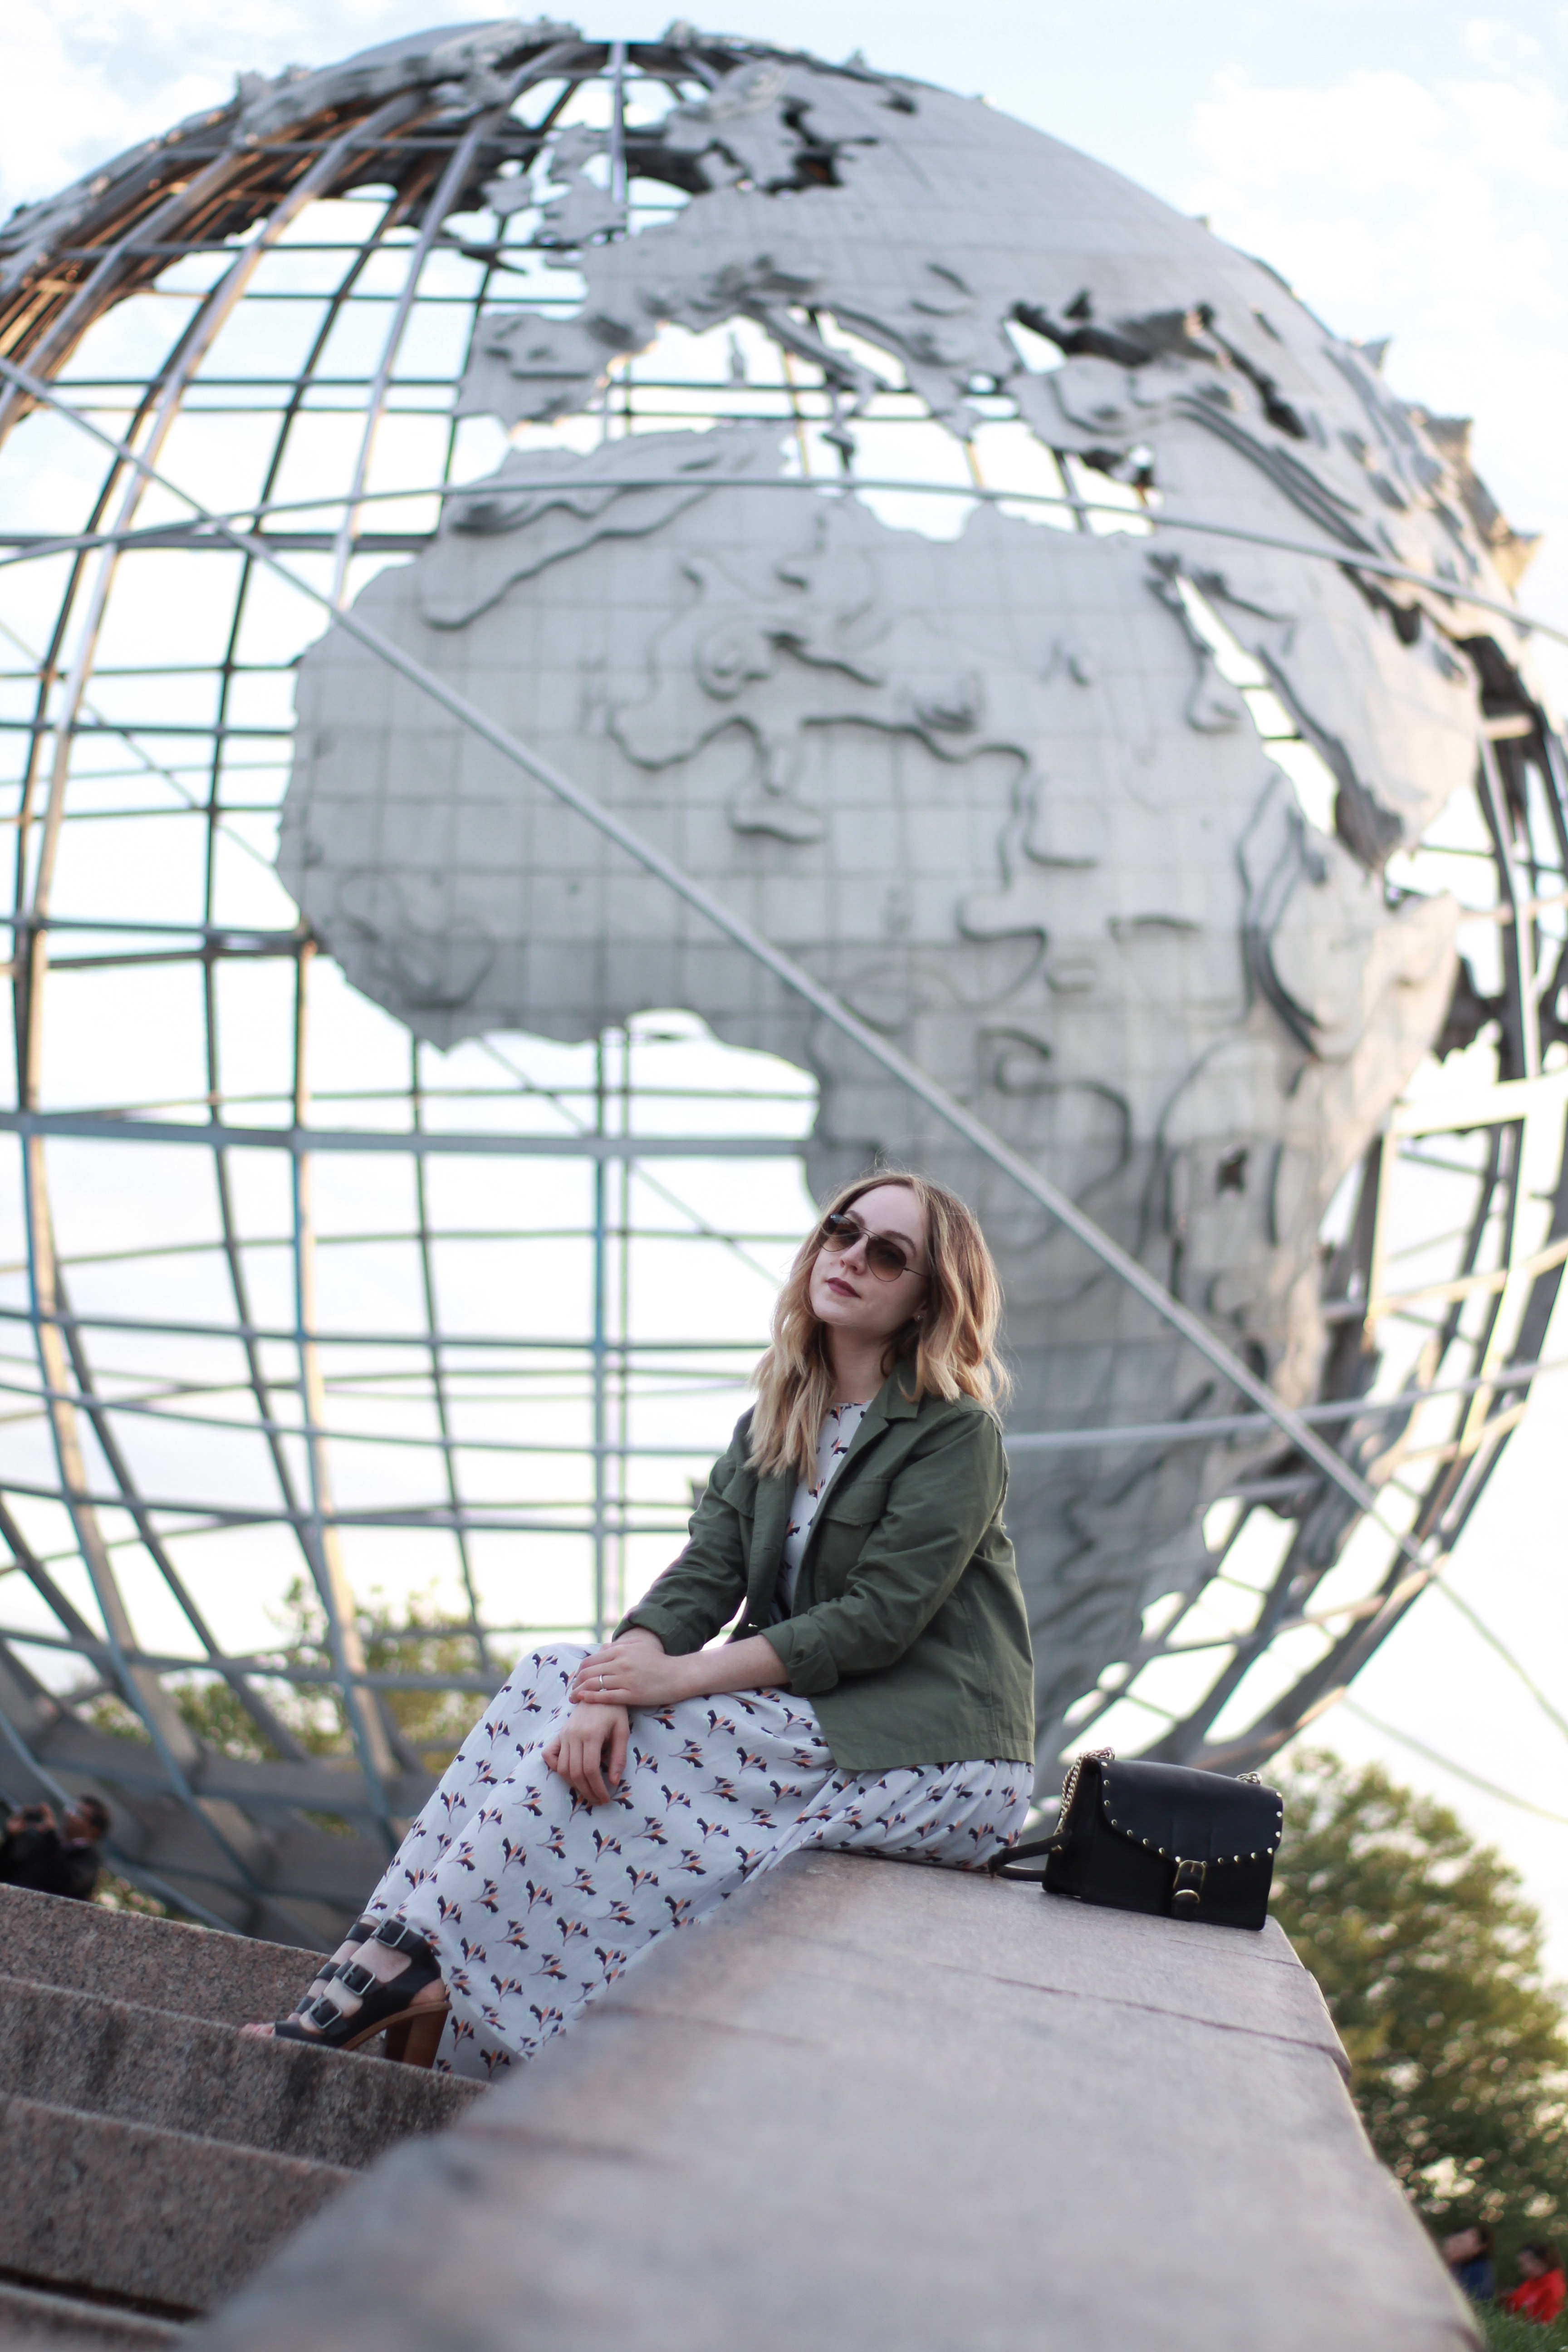 The Unisphere: My Favorite Part of Queens